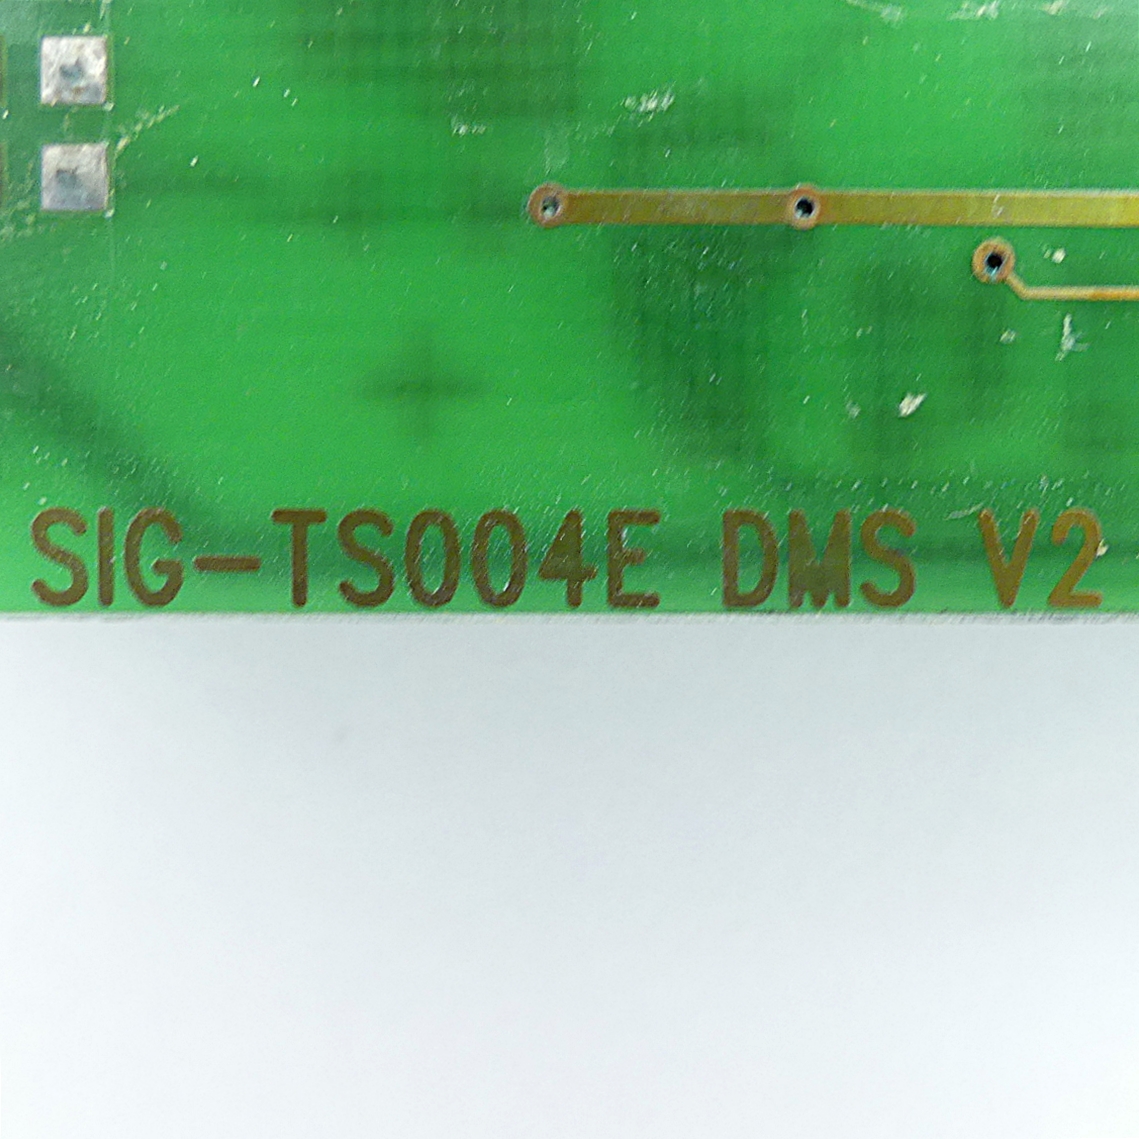 Control card TS 004 E 